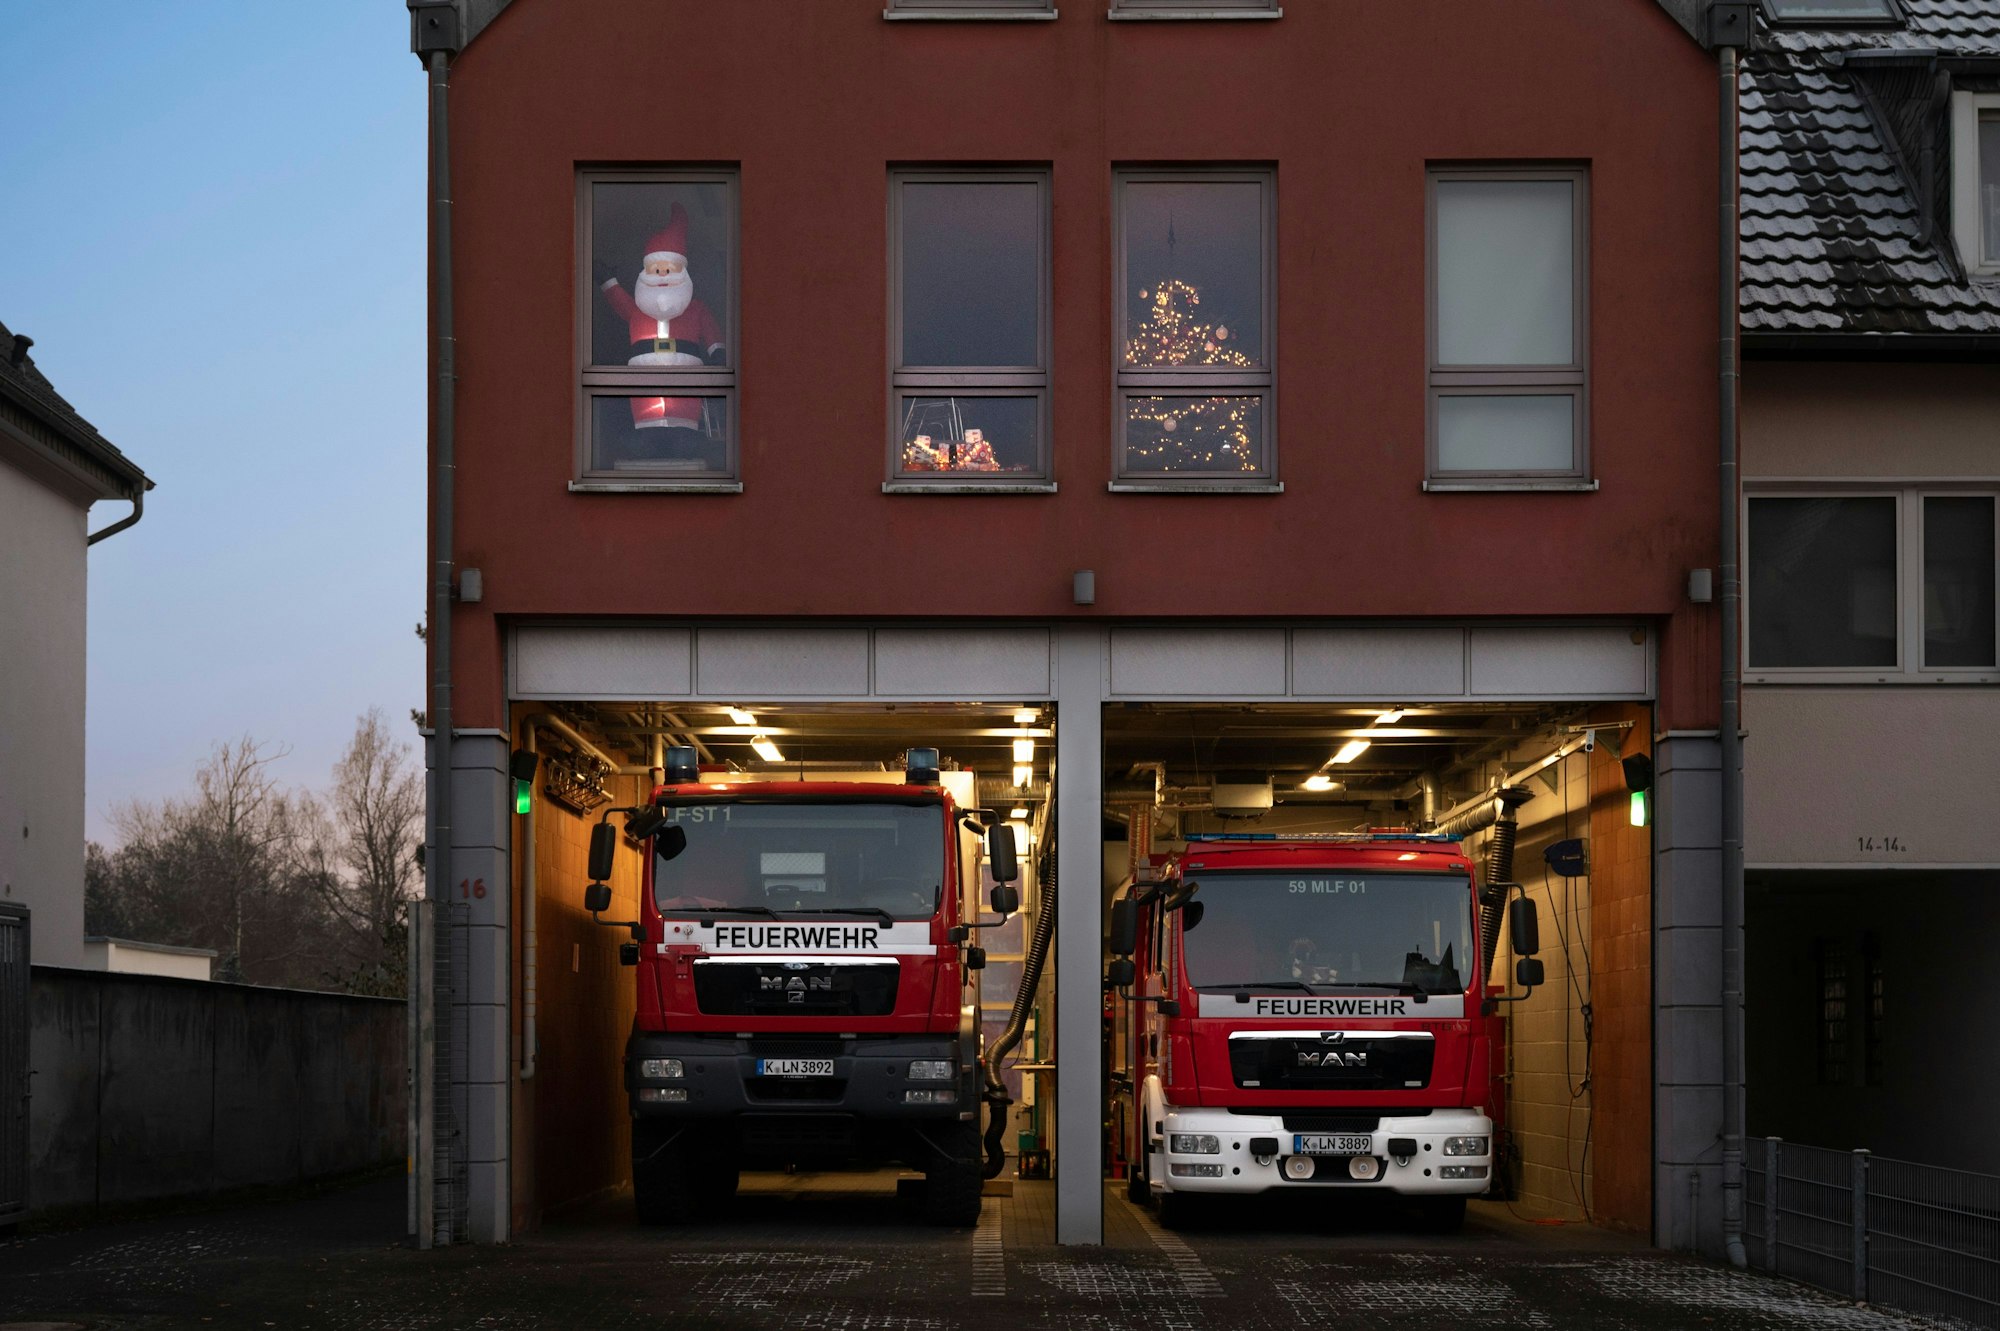 Das Gerätehaus ist mehrstöckig. In den Fenstern im ersten Stock sind ein leuchtender Weihnachtsmann sowie ein Tannenbaum zu sehen. In den zwei Fahrzeughallen im Erdgeschoss stehen zwei Feuerwehrfahrzeuge.